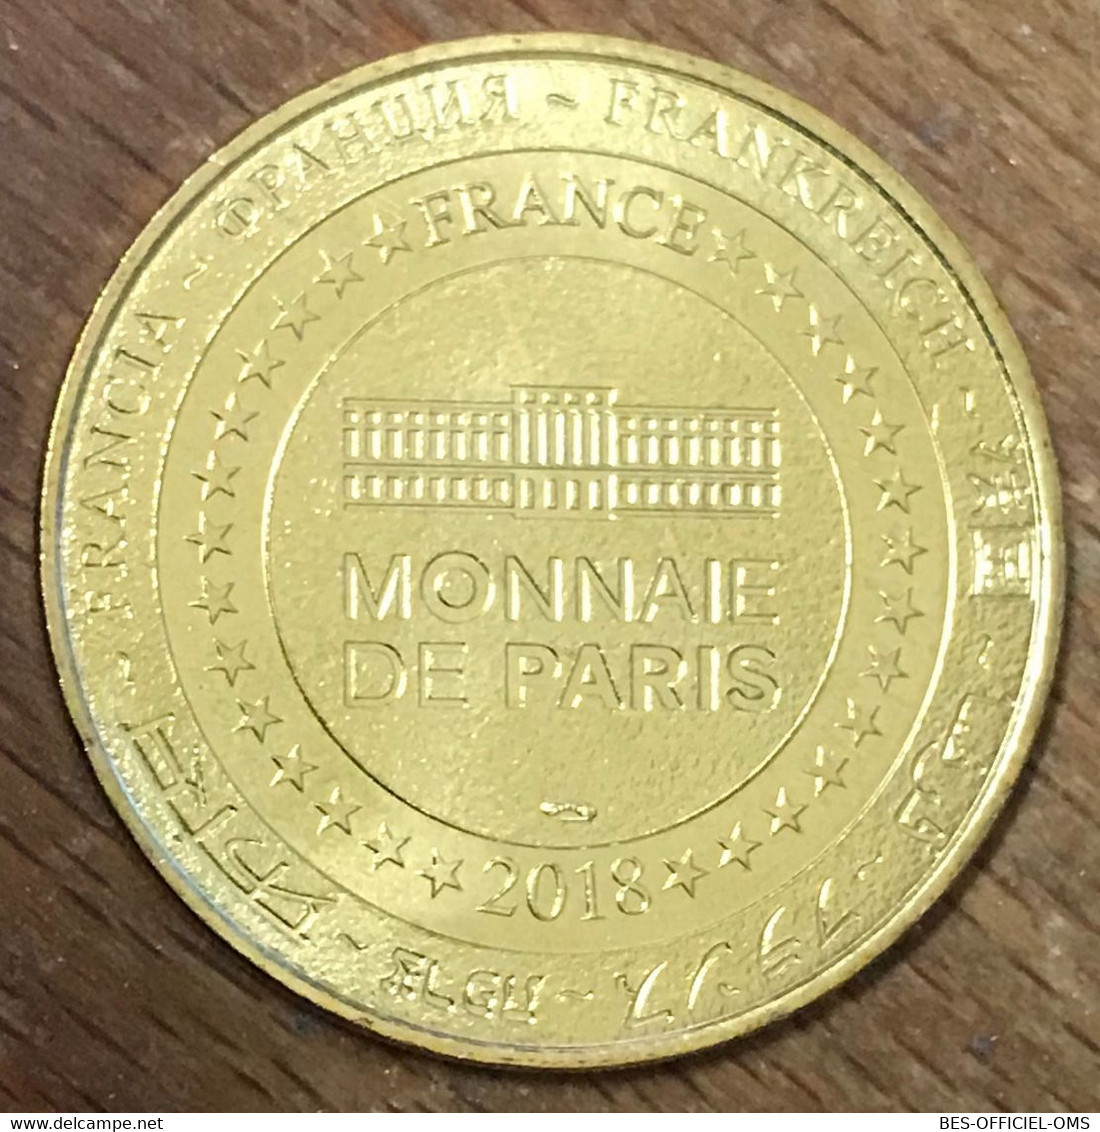 60 PLAILLY PARC ASTERIX IDEFIX MDP 2018 MÉDAILLE SOUVENIR MONNAIE DE PARIS JETON TOURISTIQUE MEDALS COINS TOKENS - 2018